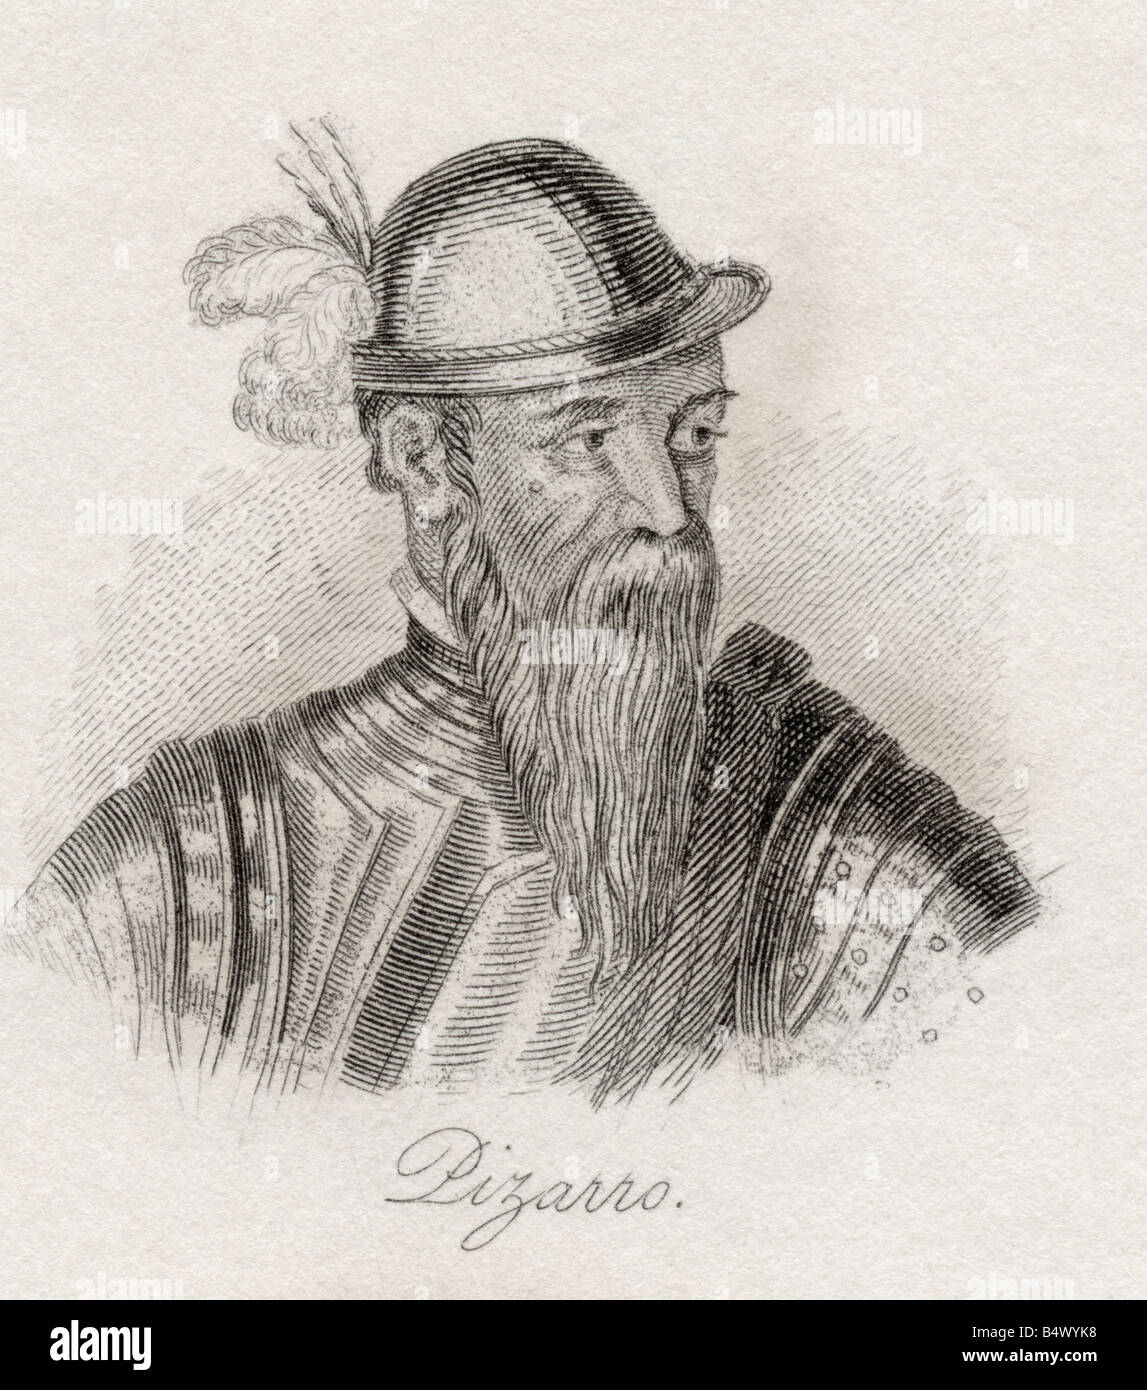 Francisco Pizarro Gonzalez, 1471 bis 1541. Spanischer Eroberer, Eroberer Perus. Stockfoto